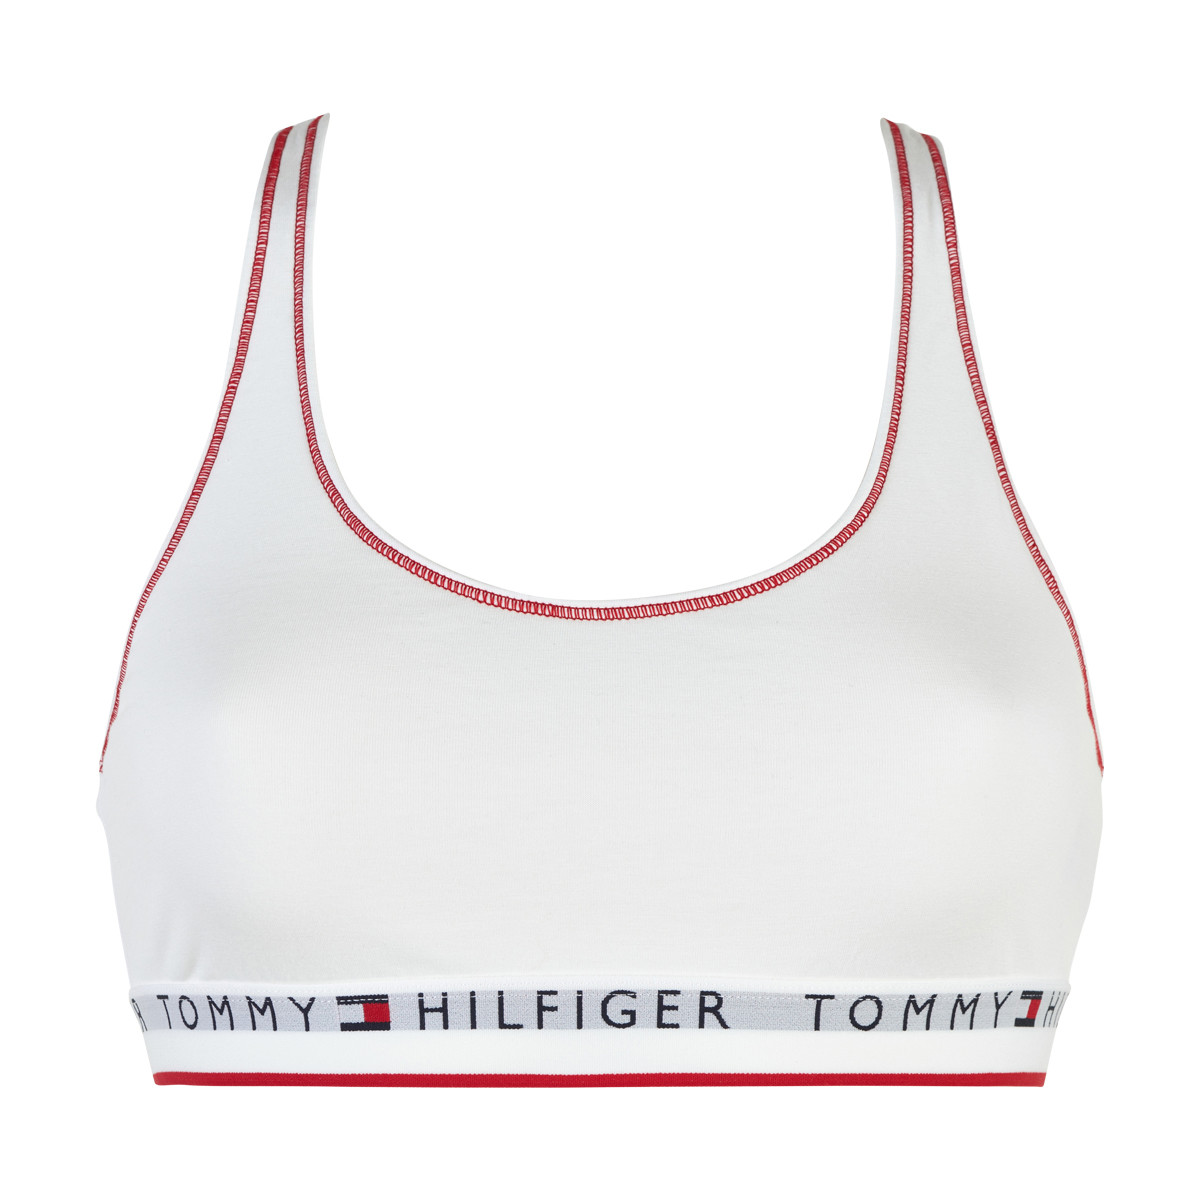 Tommy Hilfiger Lingeri Bralette W Ybr, Farve: Hvid, Størrelse: S, Dame